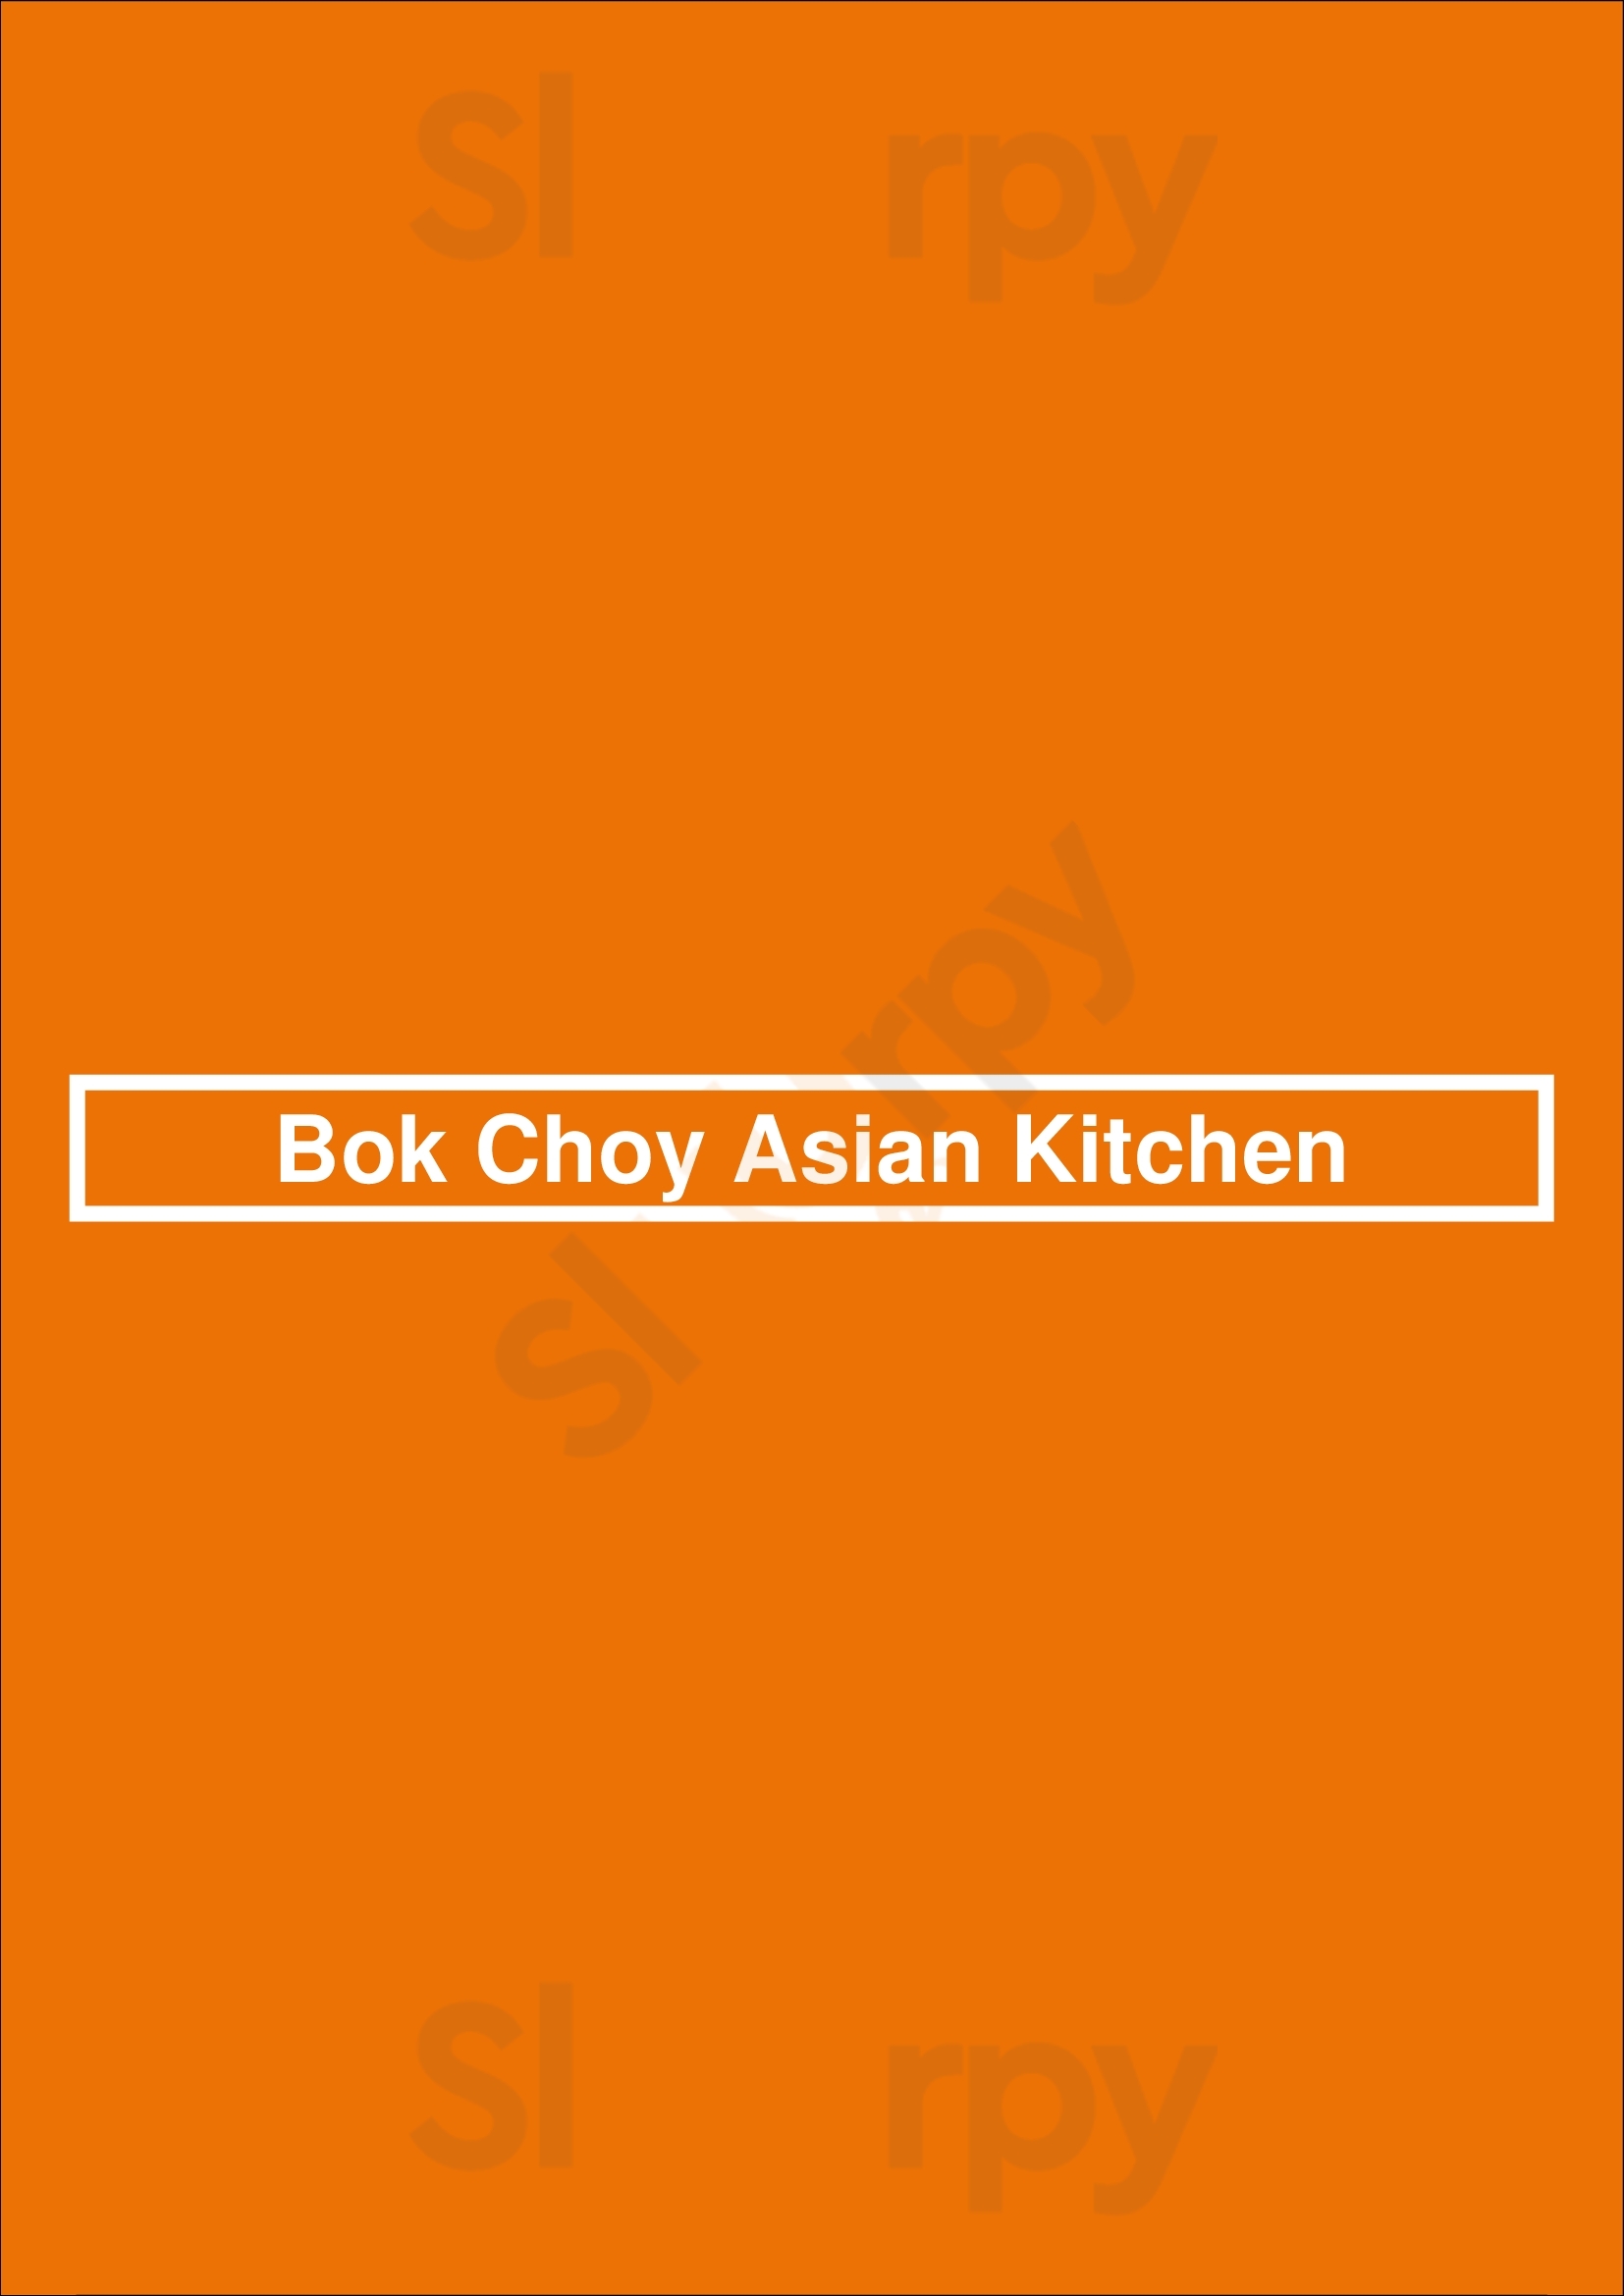 Bok Choy Asian Kitchen Addison Menu - 1